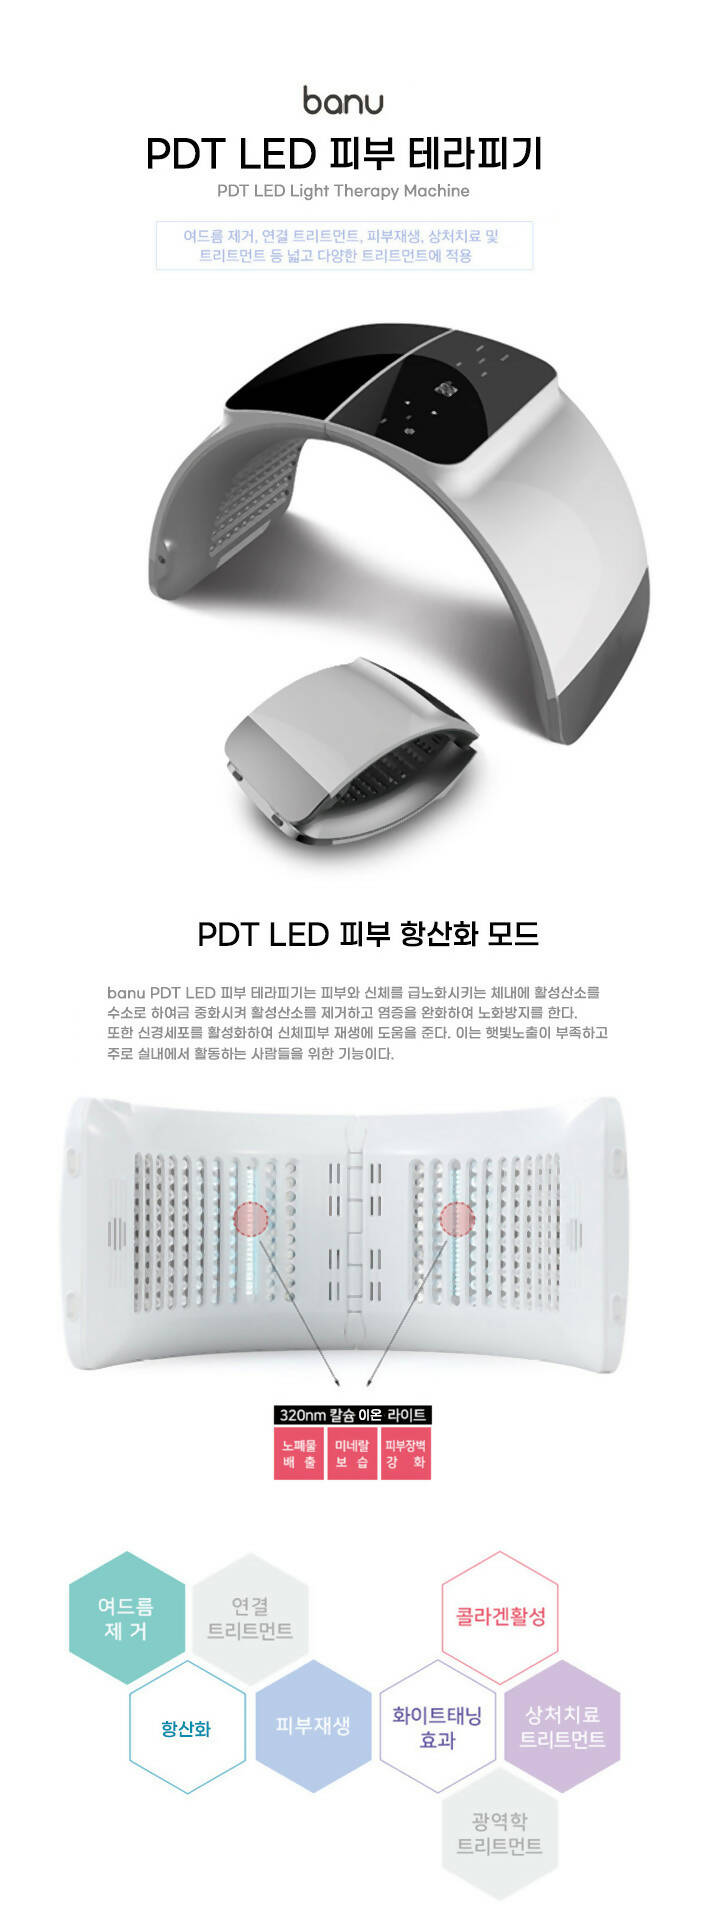 [SALE] banu PDT LED Light Therapy